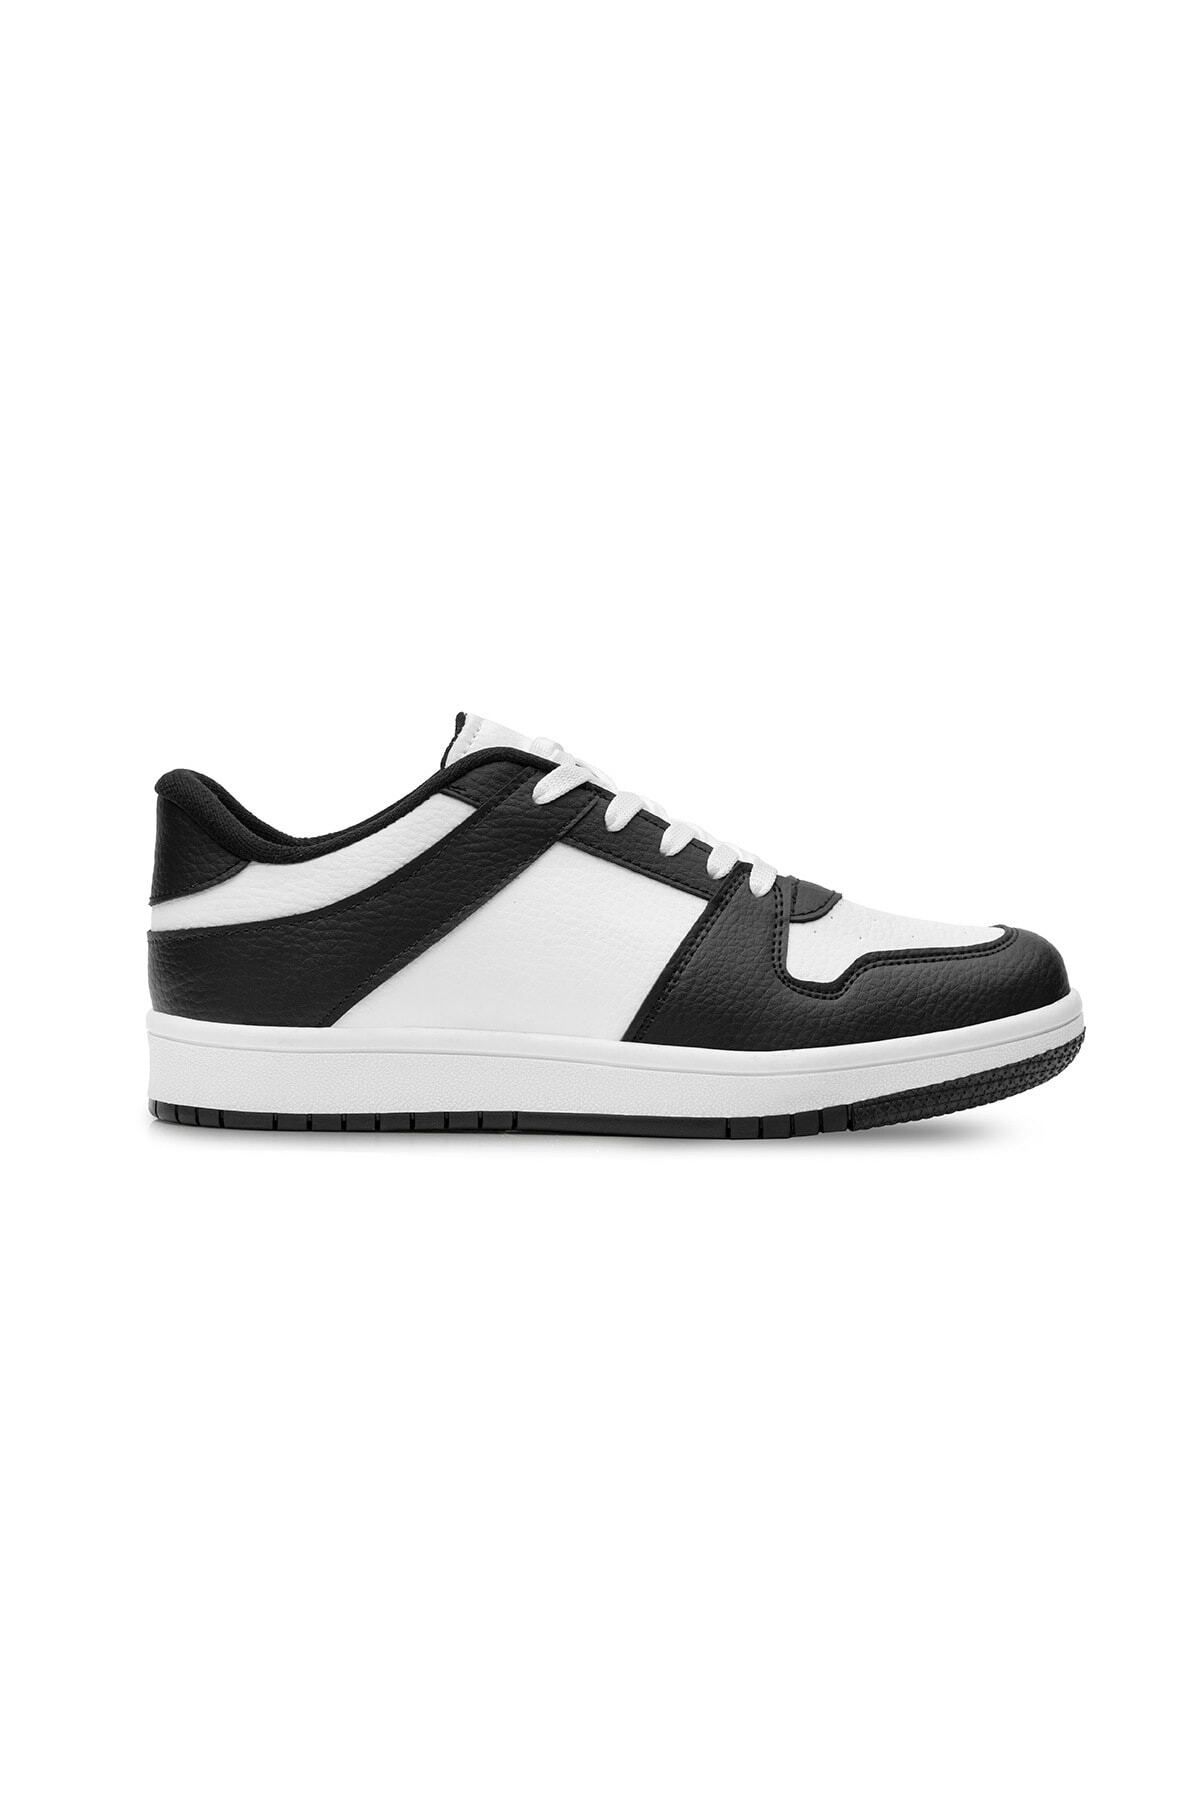 QBALVİN Jordan Sneakers Unisex Rahat Ergonomik Bağcıklı Nefes Alabilen Esnek Tabanlı Günlük Spor Ayakkabı